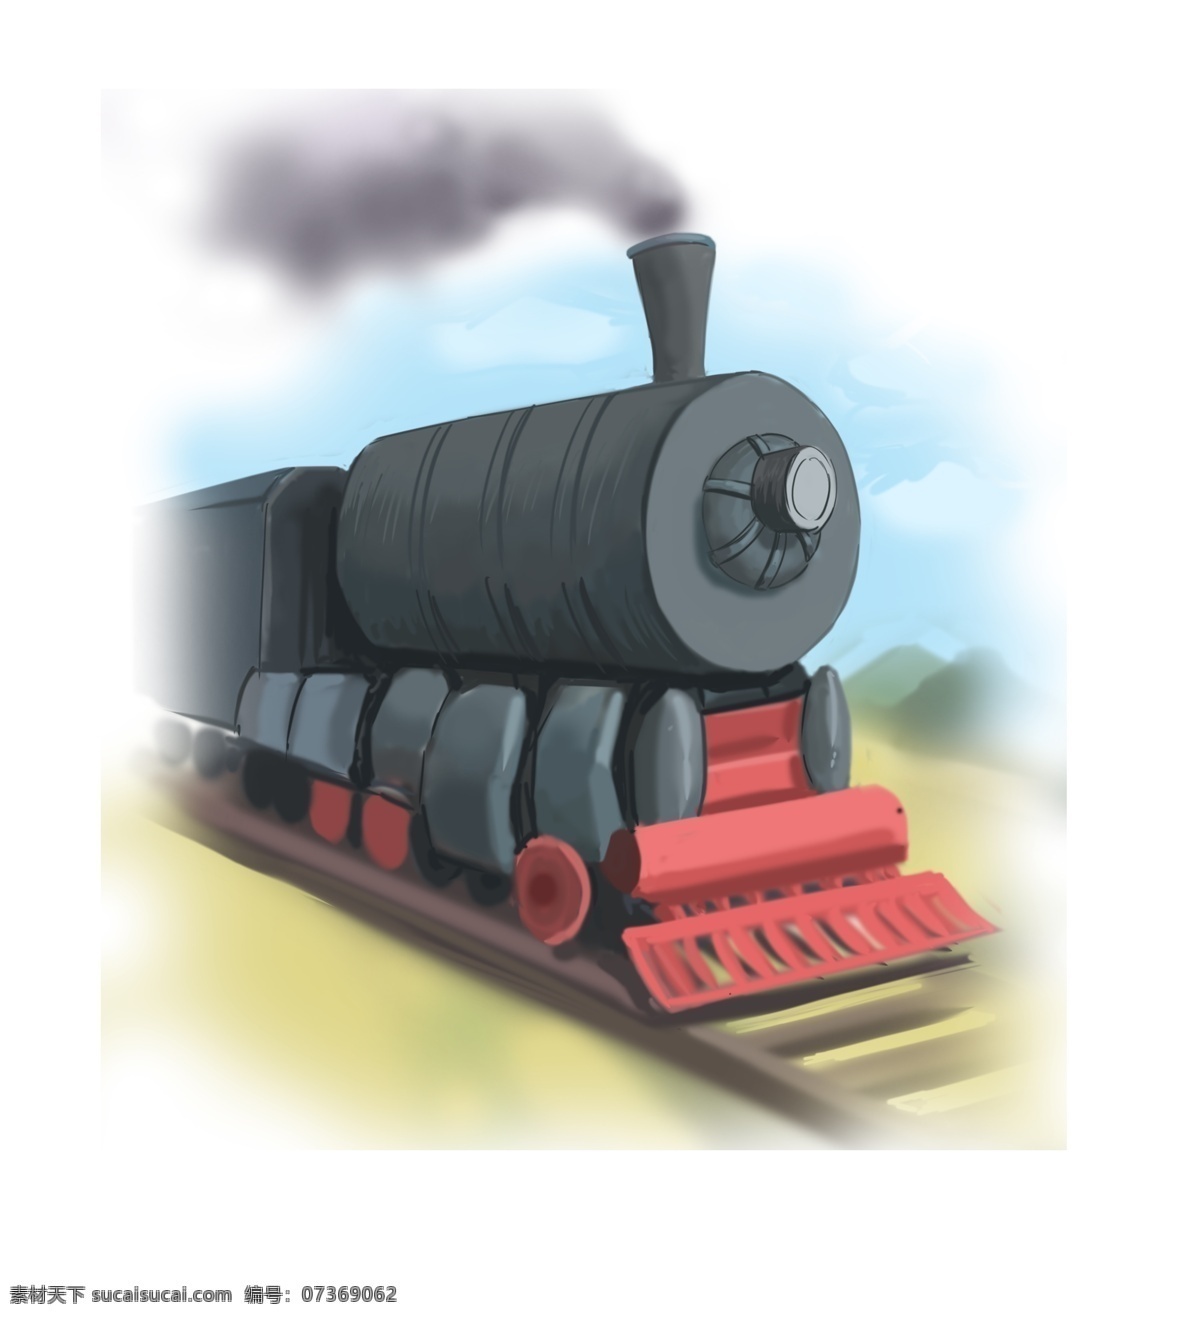 火车 主题 火车头 漫 画风 交通工具 铁轨 烟囱 烟雾 列车 黑色 草地 蓝天白云 卡通风格 手绘